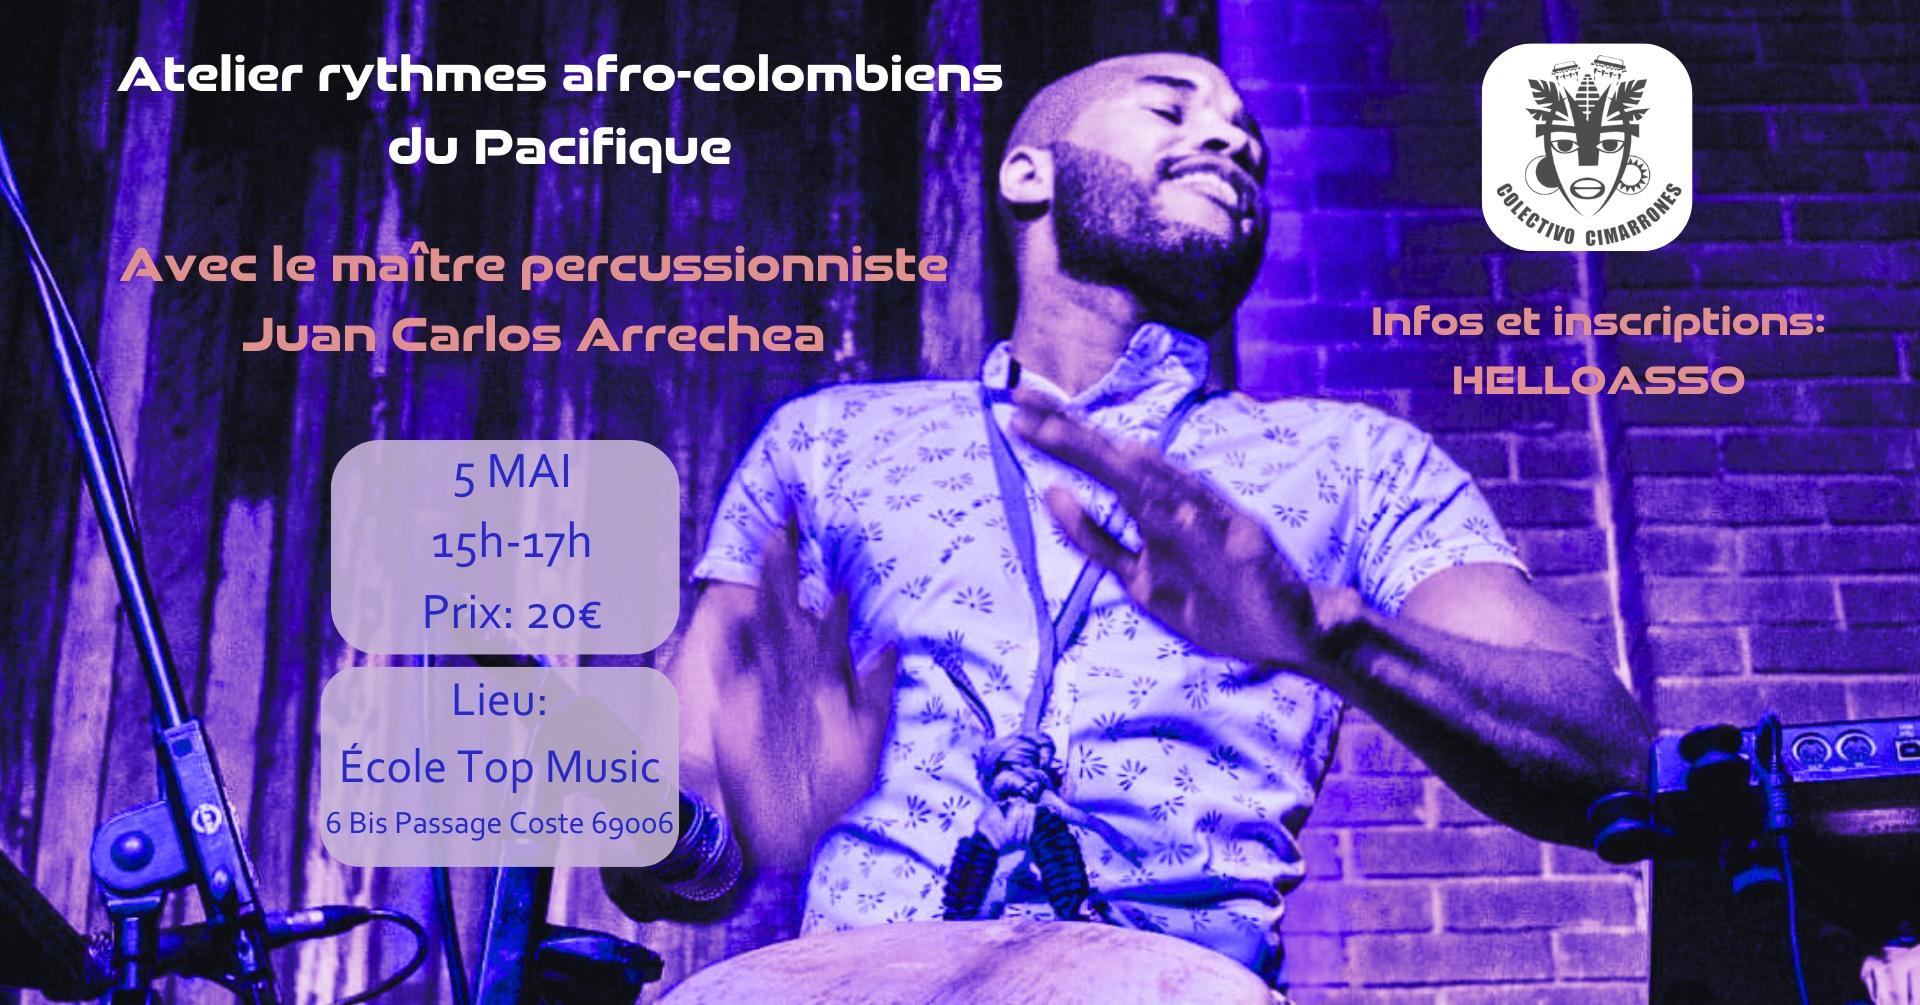 Dimanche 05/05 à 15h00 : Atelier percussions afro-colombiennes